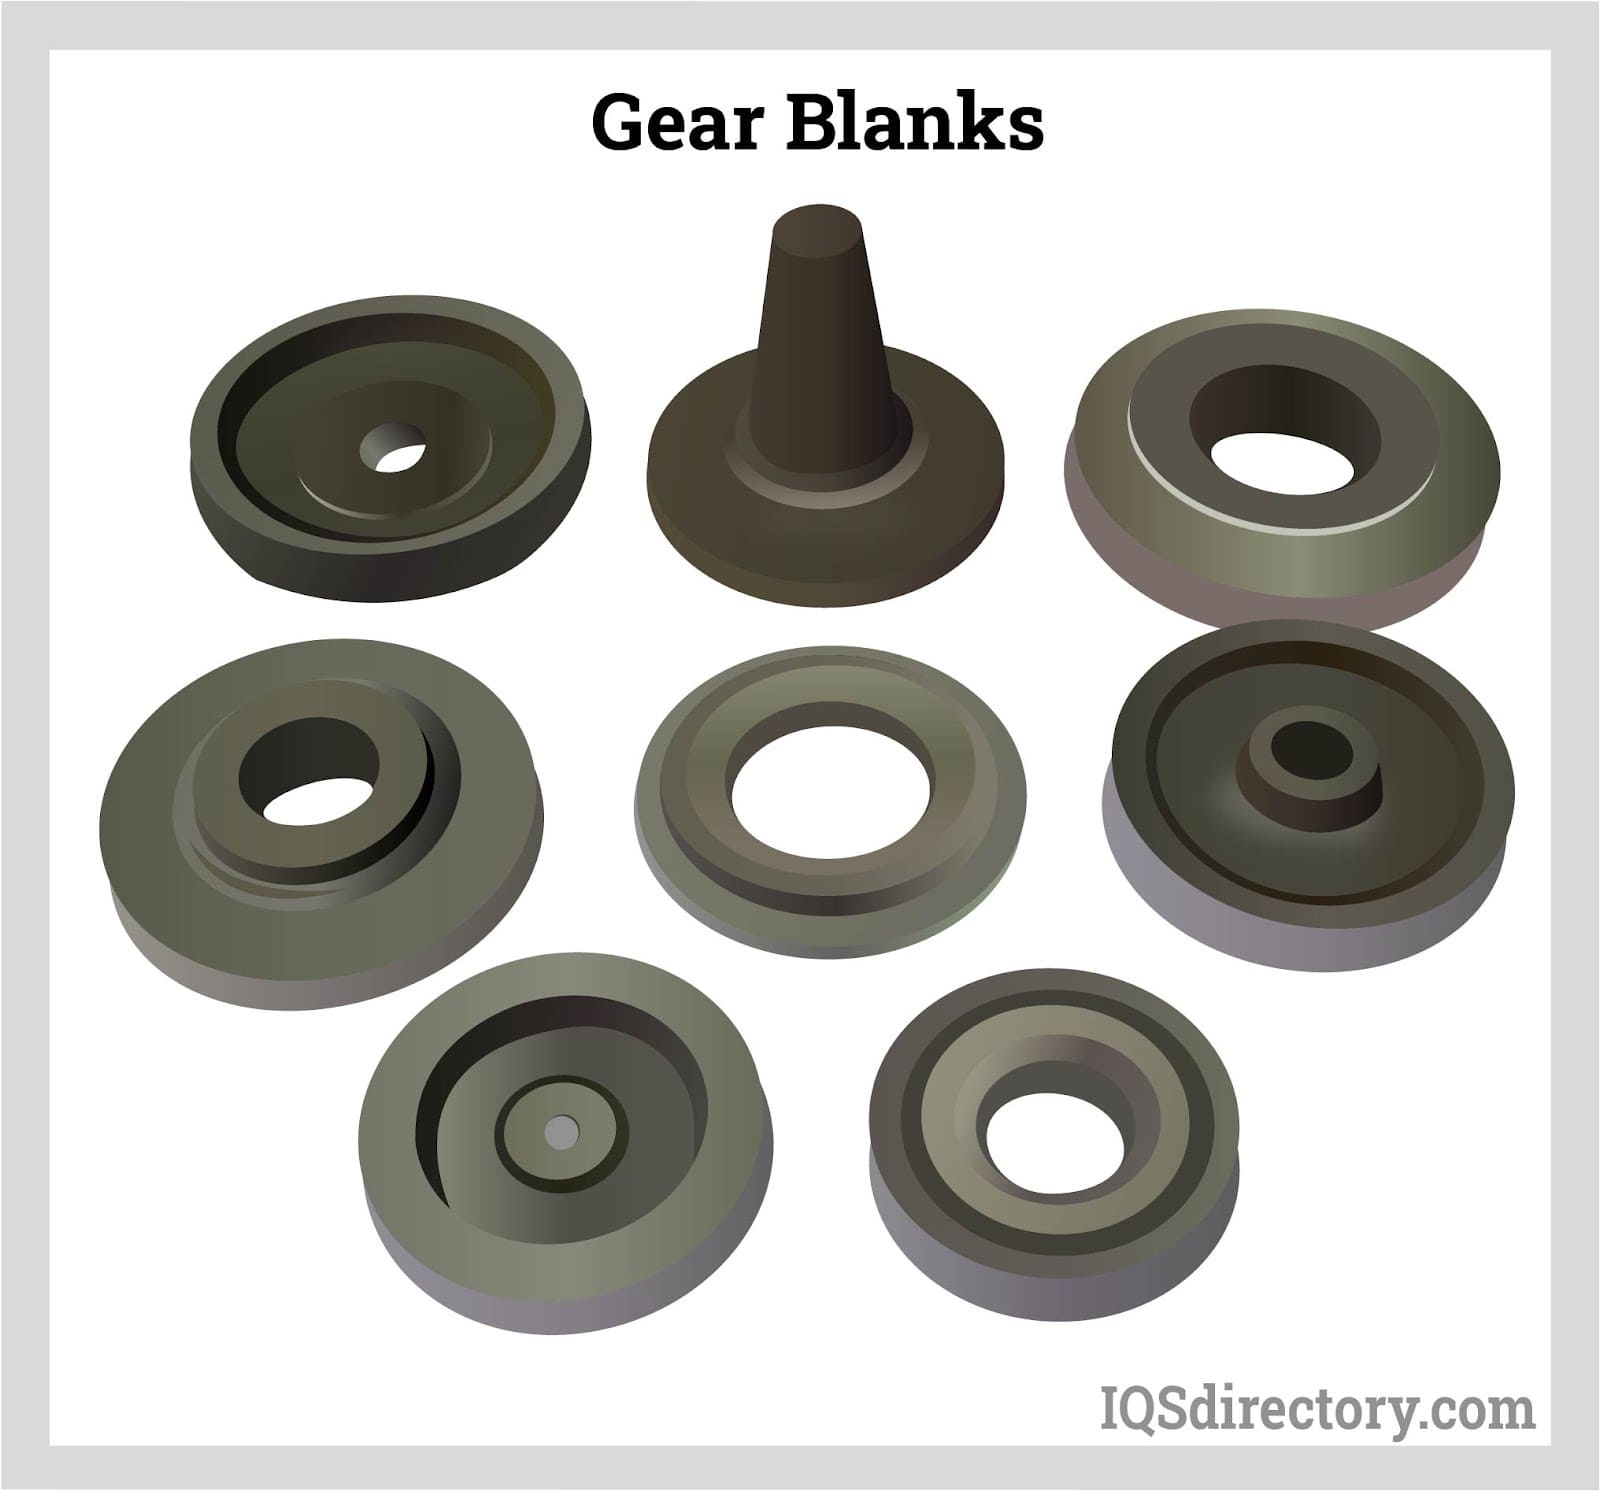 Gear Blanks